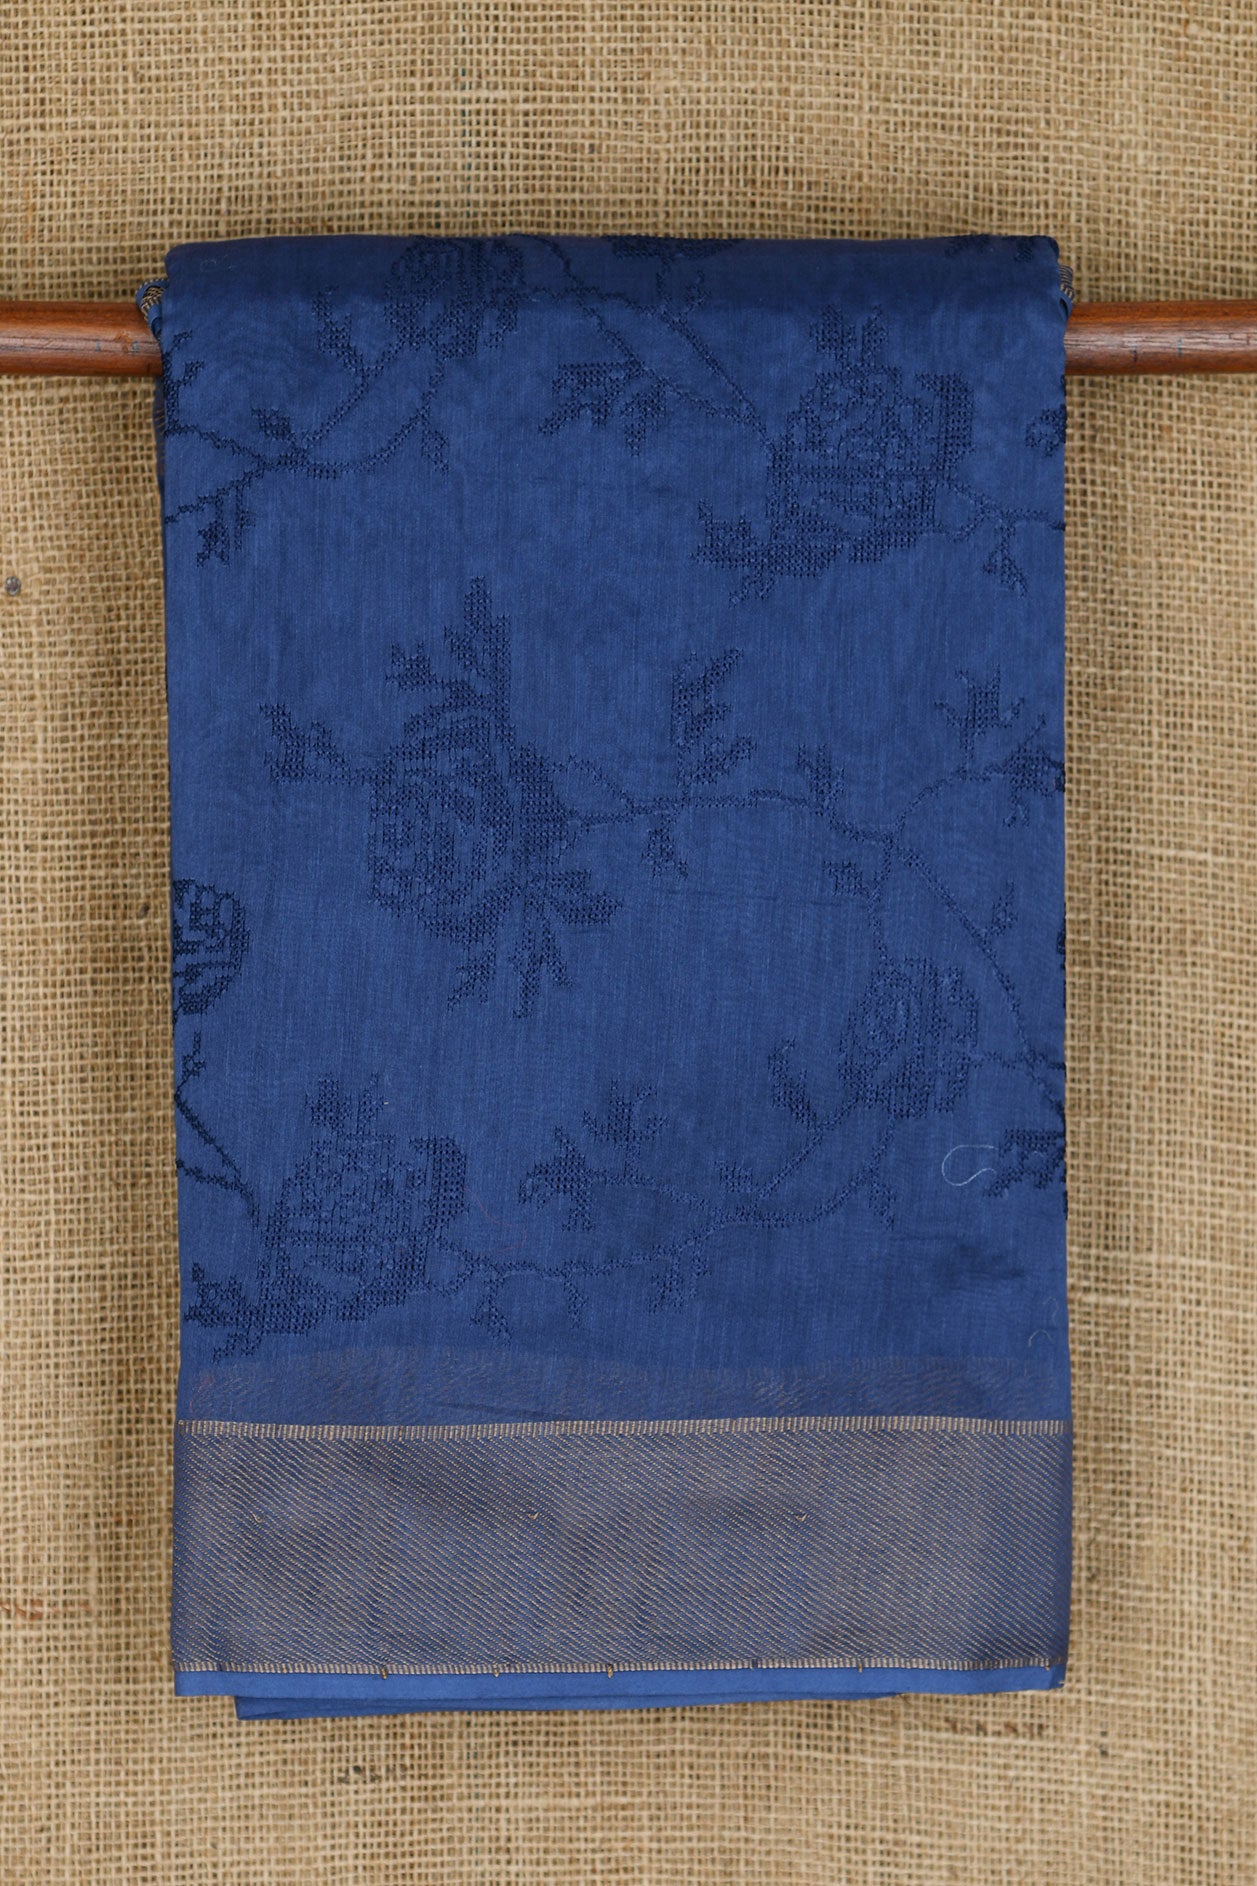 Embroidered Floral Design Indigo Blue Chanderi Silk Cotton Saree